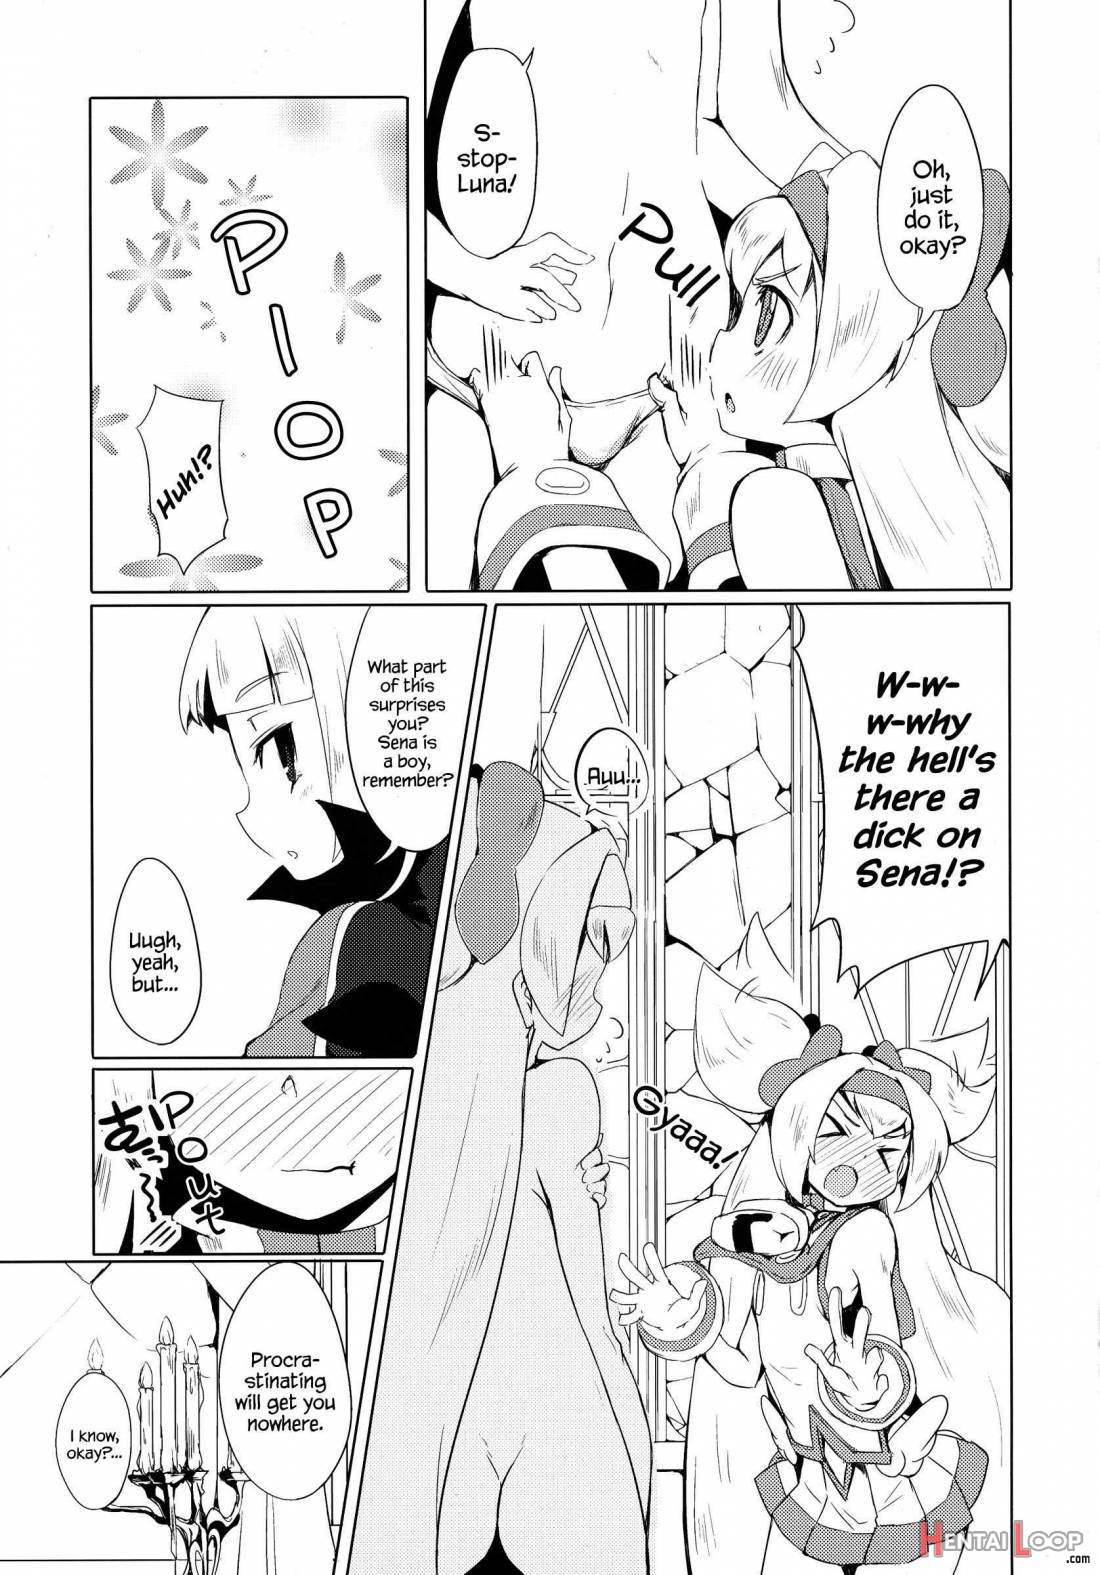 Hime-shiki Shitsuke 2 page 9